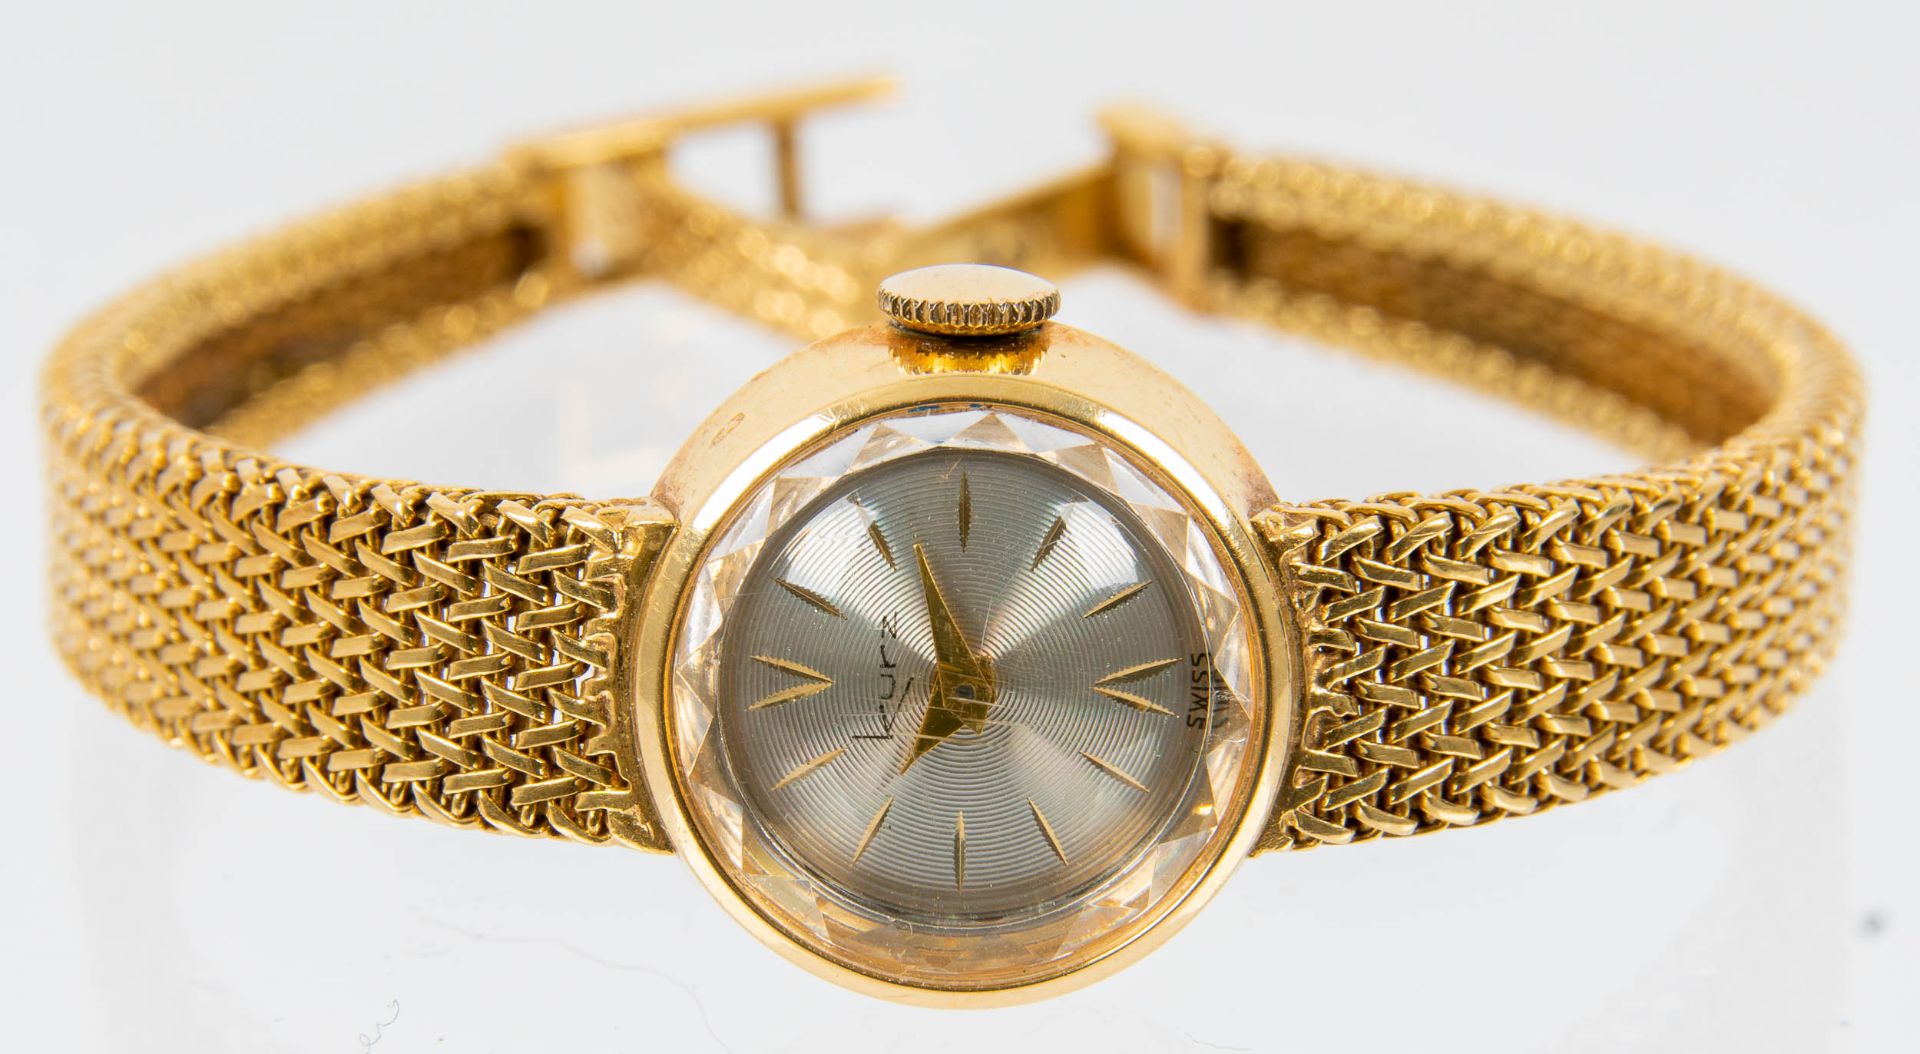 Klassische Damenarmbanduhr der Marke "KURZ-SWISS", Gehäuse und Armband in 750er Gelbgold, Werk läuf - Bild 3 aus 9